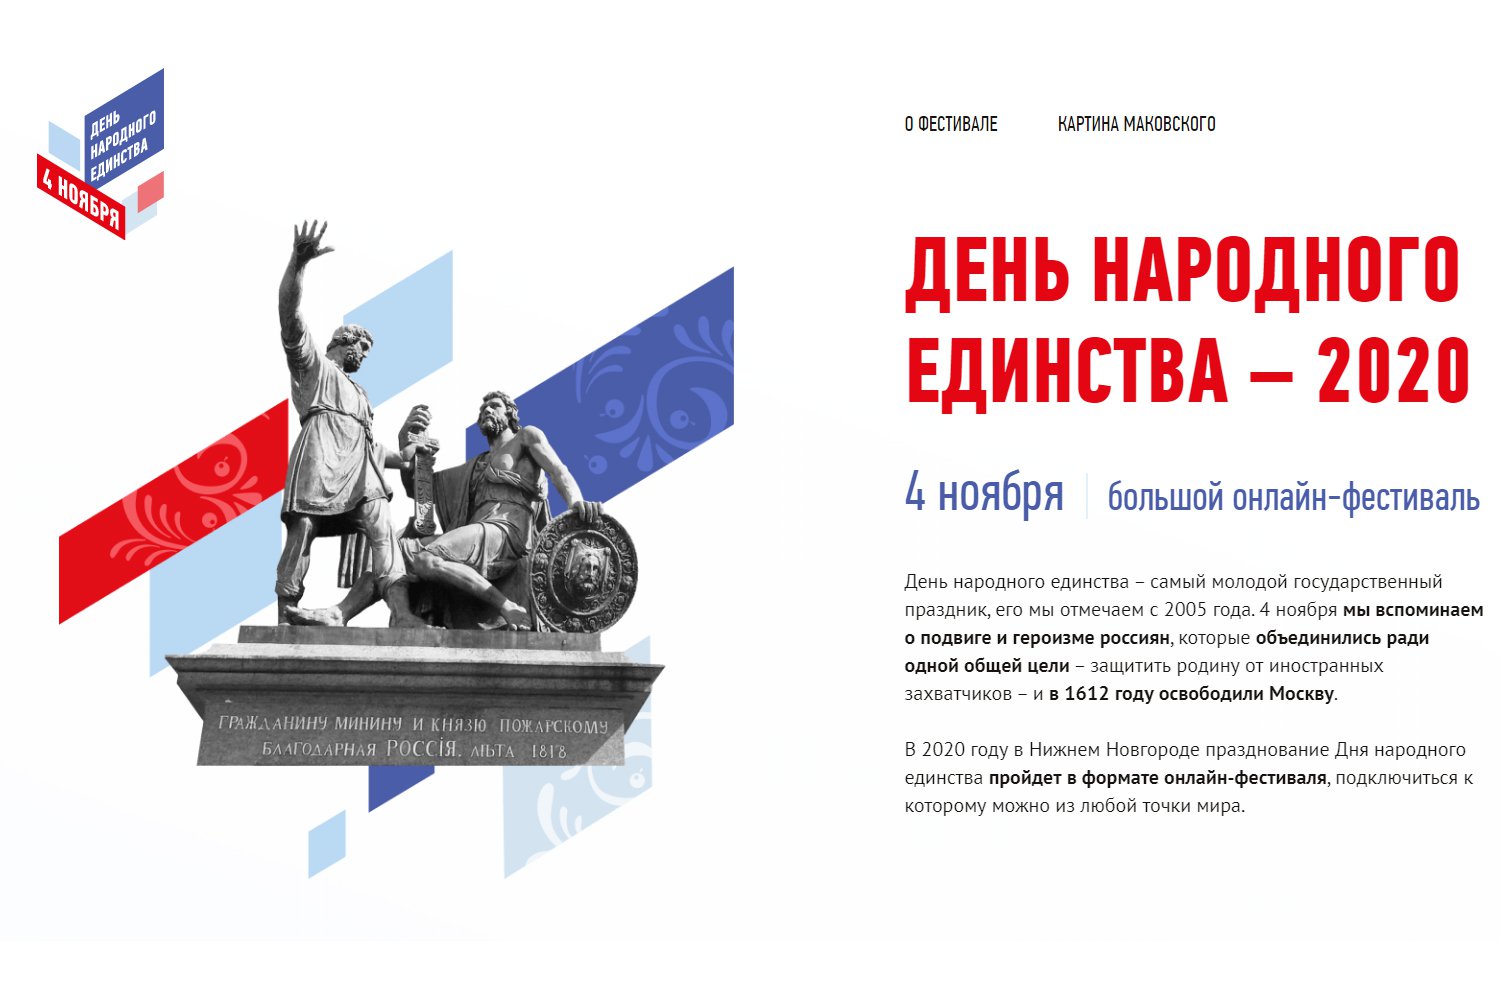 Нижегородцы отпразднуют День народного единства онлайн